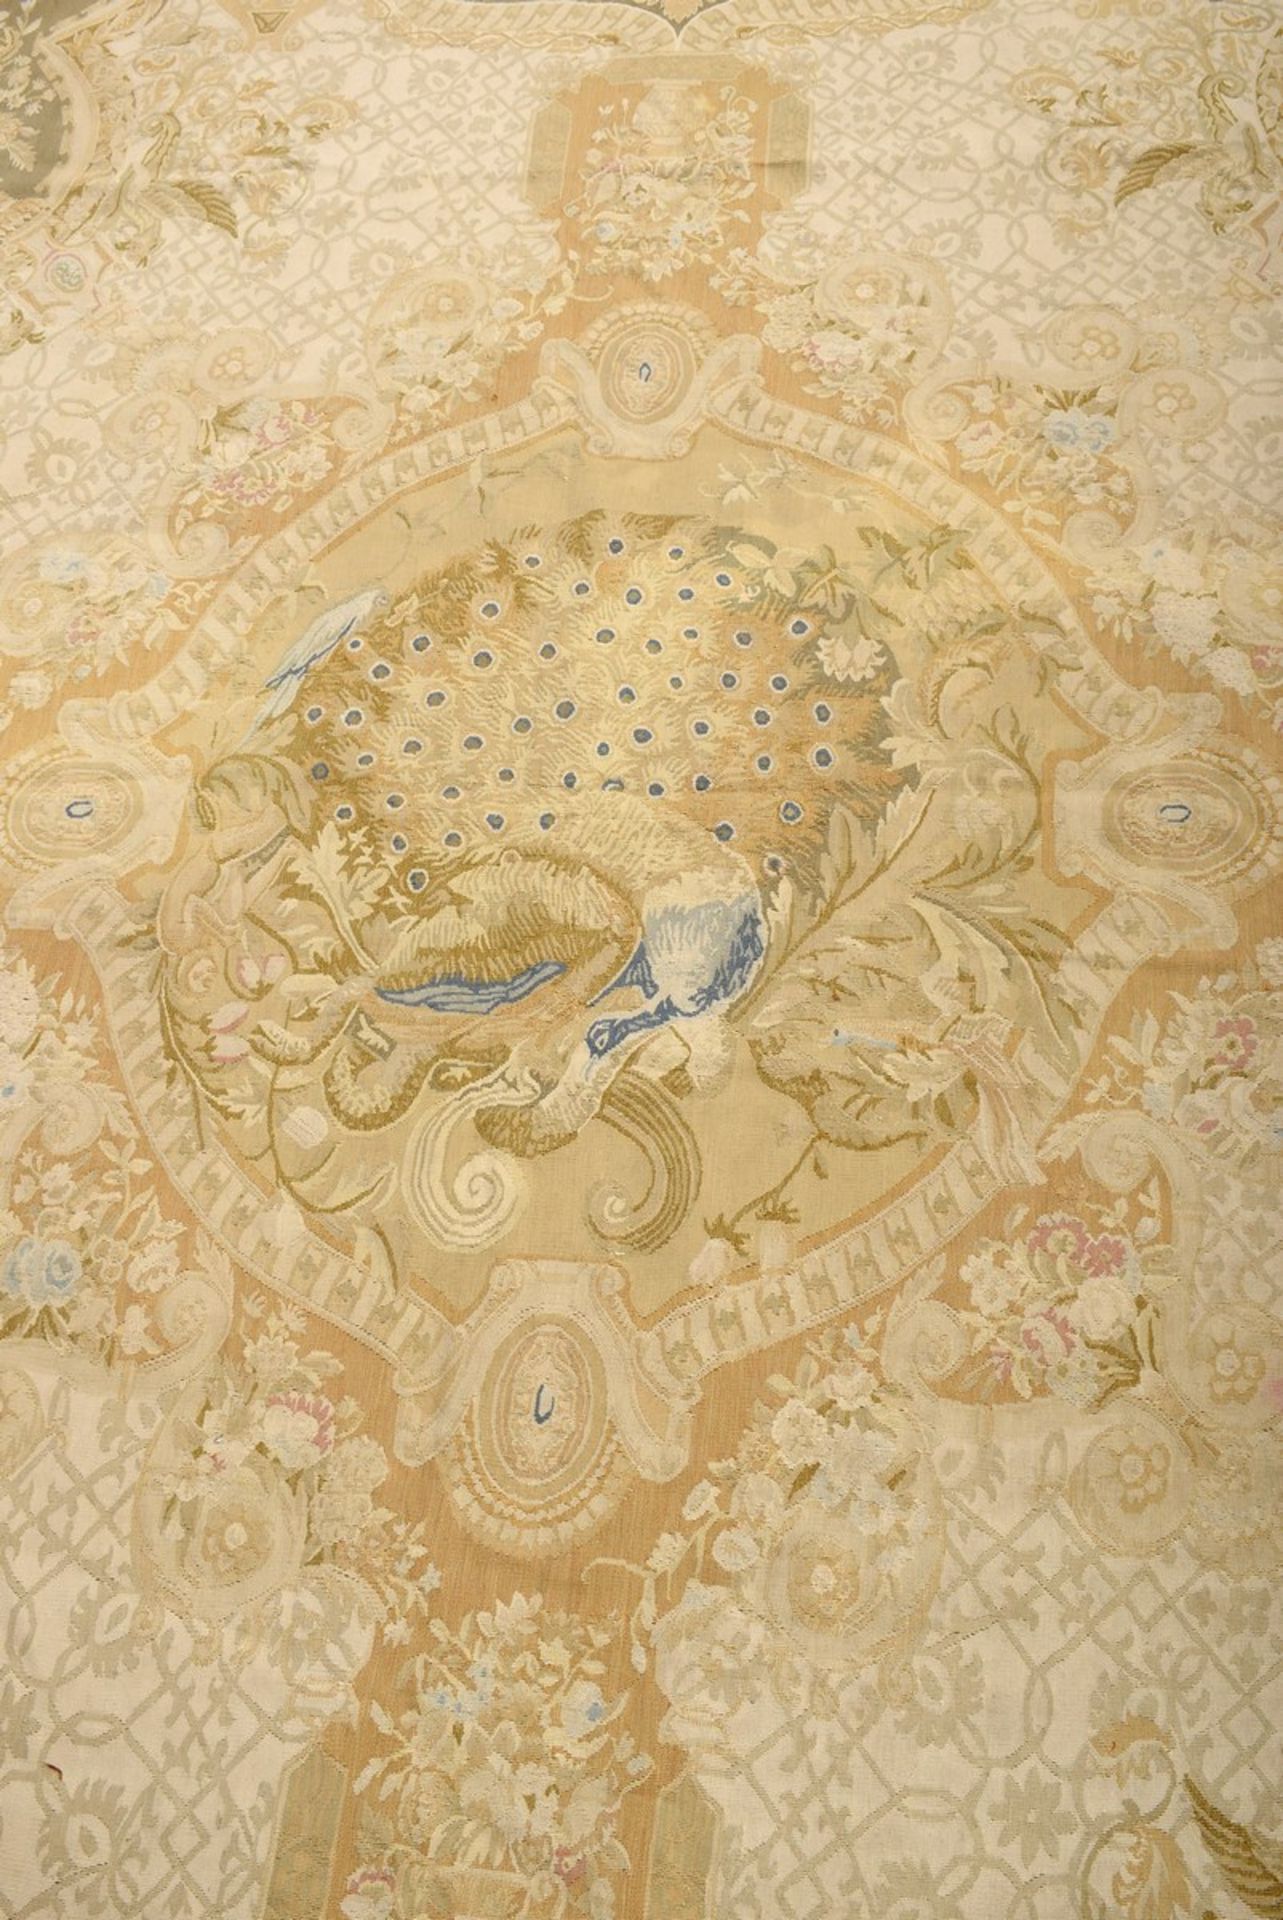 Großer Aubusson Teppich in Grün- und Beigetönen nach altem Vorbild, 20.Jh., 280x310cm - Bild 9 aus 9